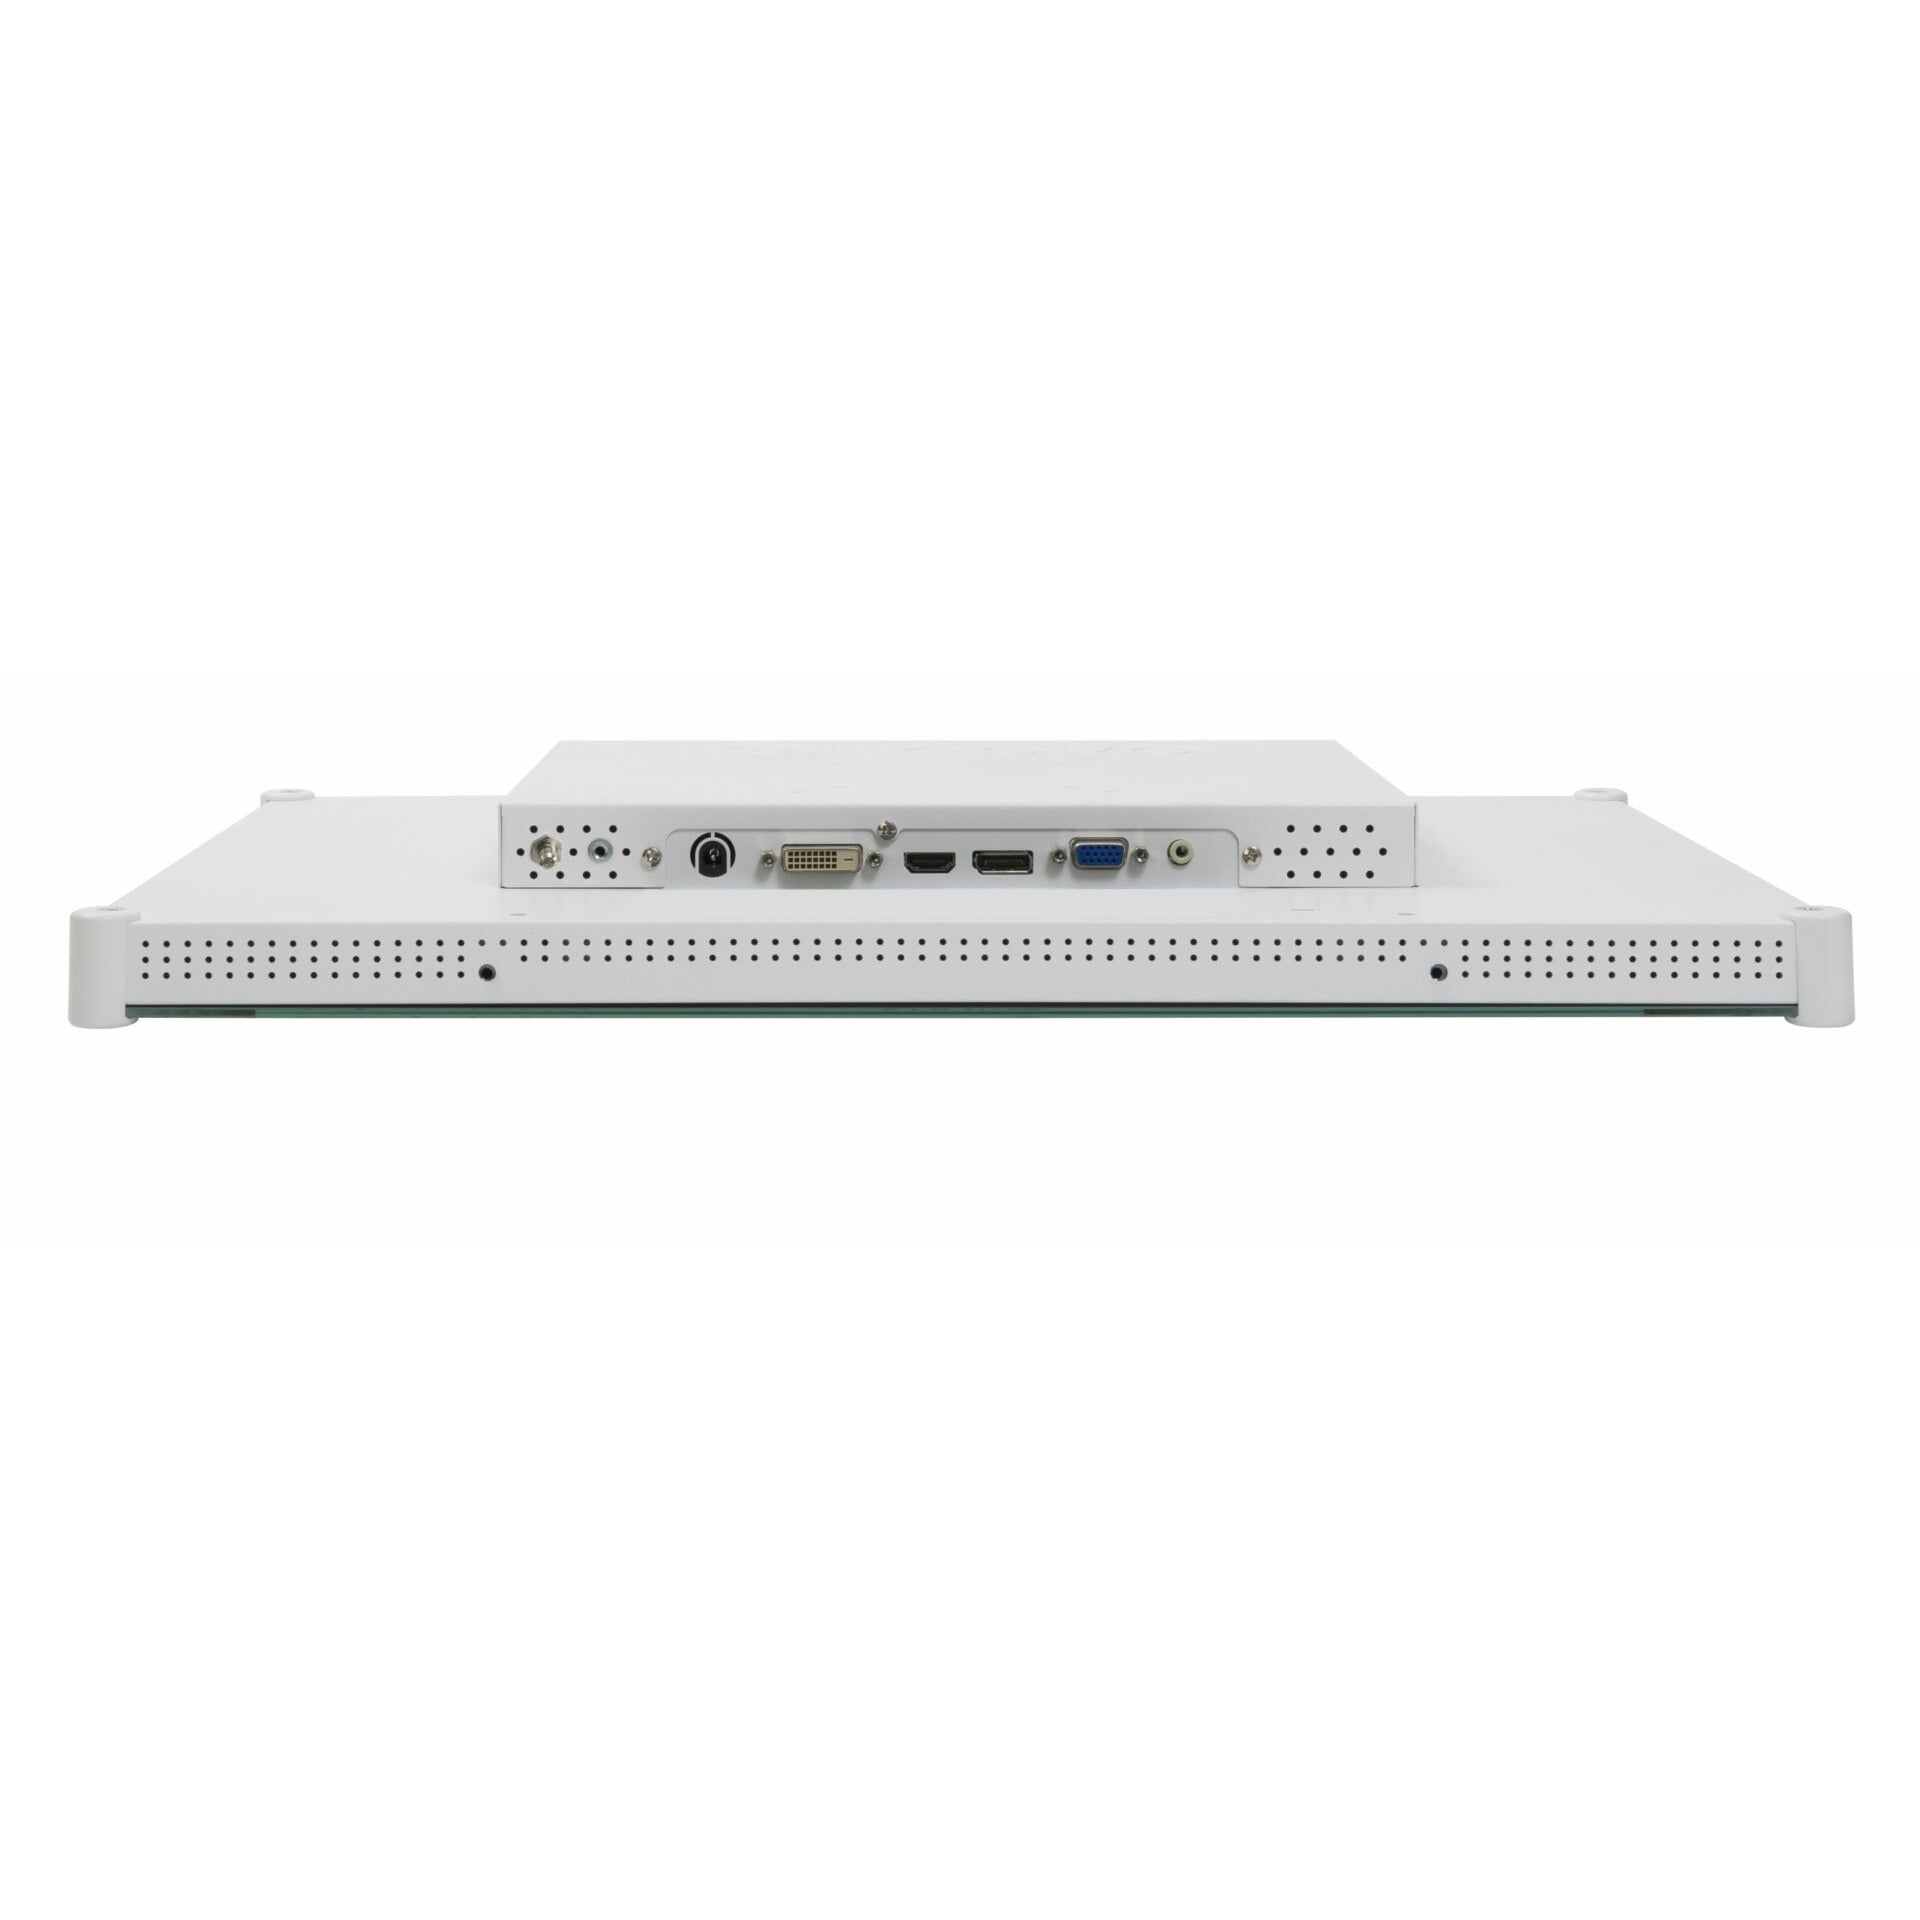 AG Neovo MX-24   24-Inch 1080p DICOM Compatible Monitor